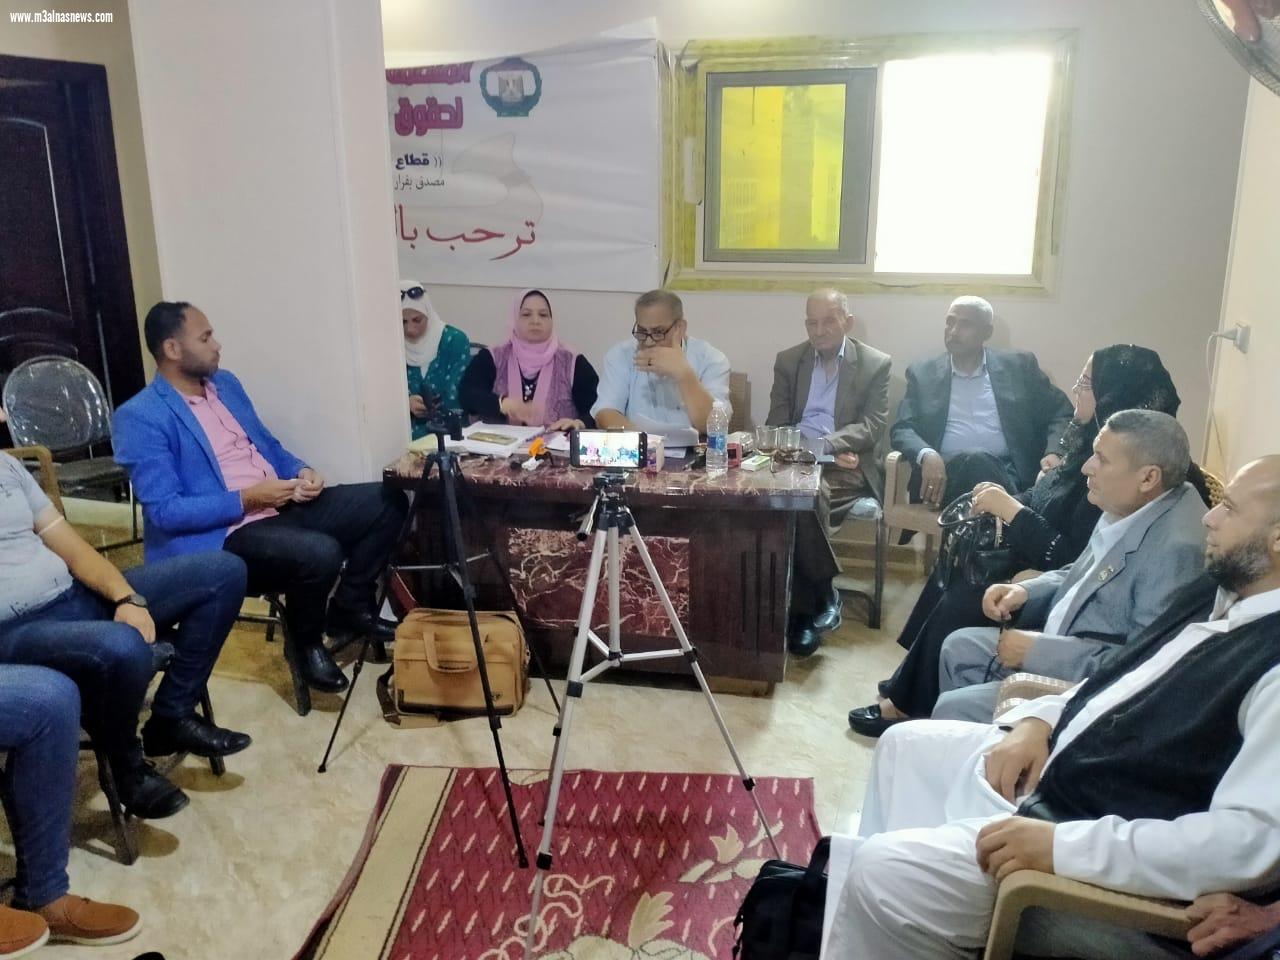 المنظمة المصرية العربية لحقوق الإنسان بكفرالشيخ تواصل فعالياتها